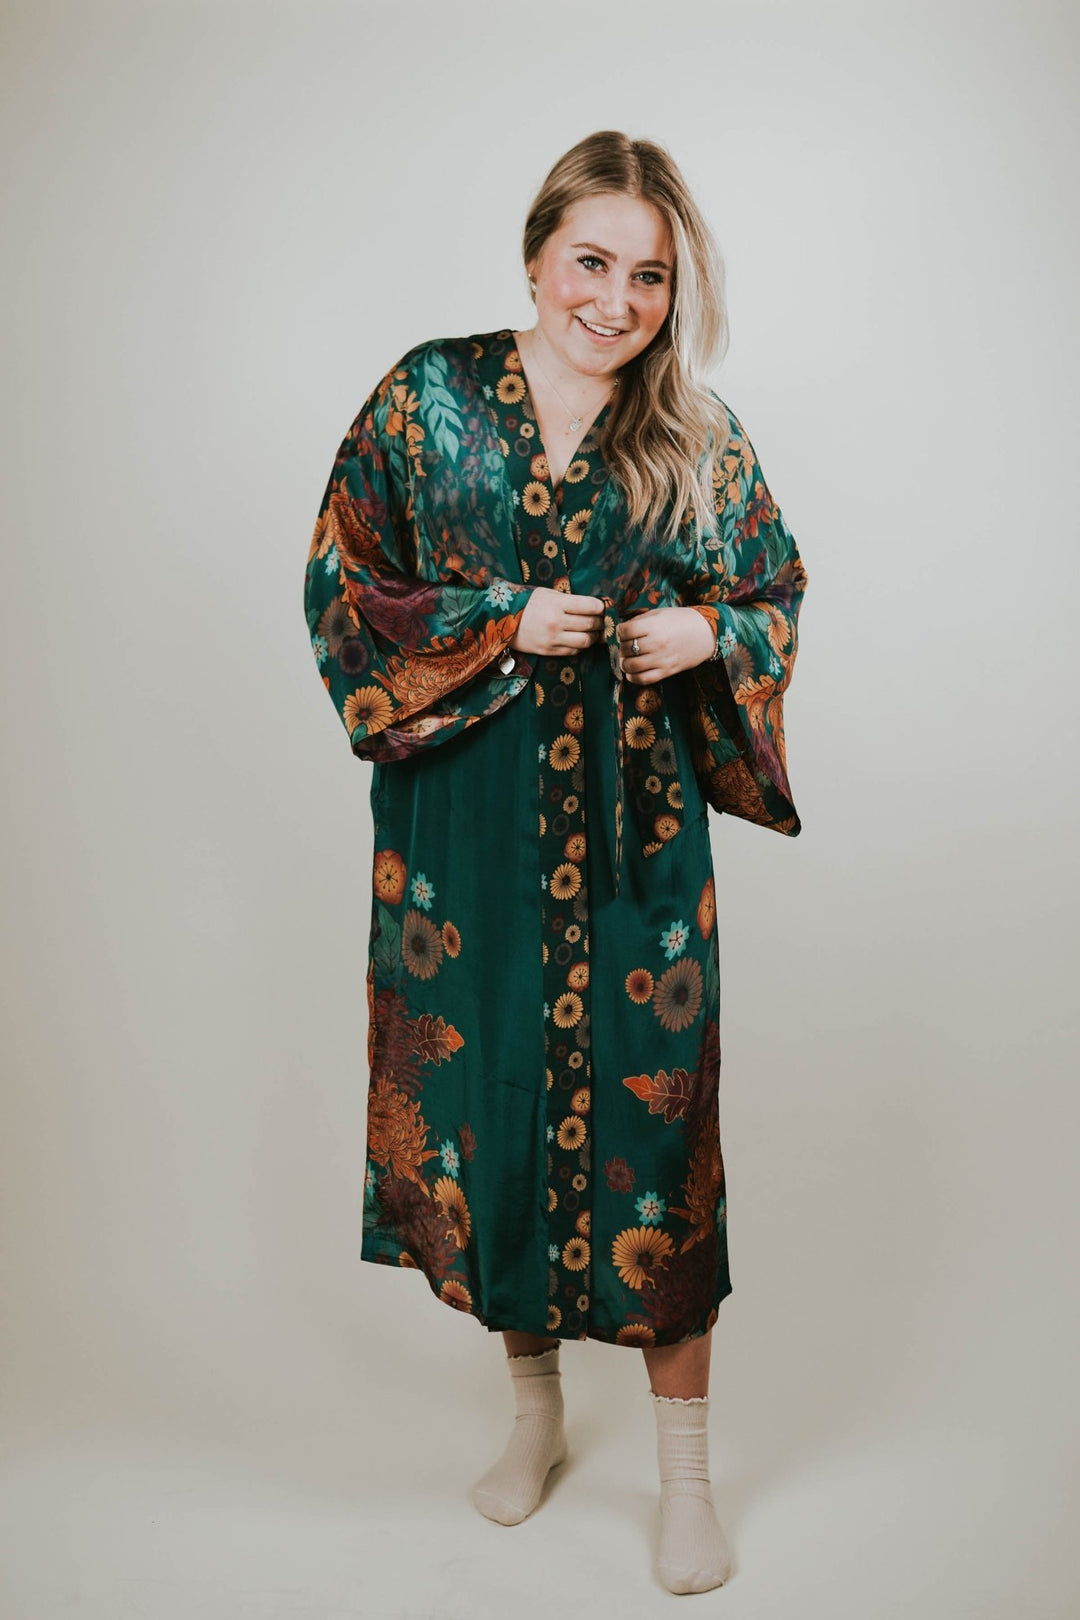 Teal Wisteria Kimono Gown - Heyday